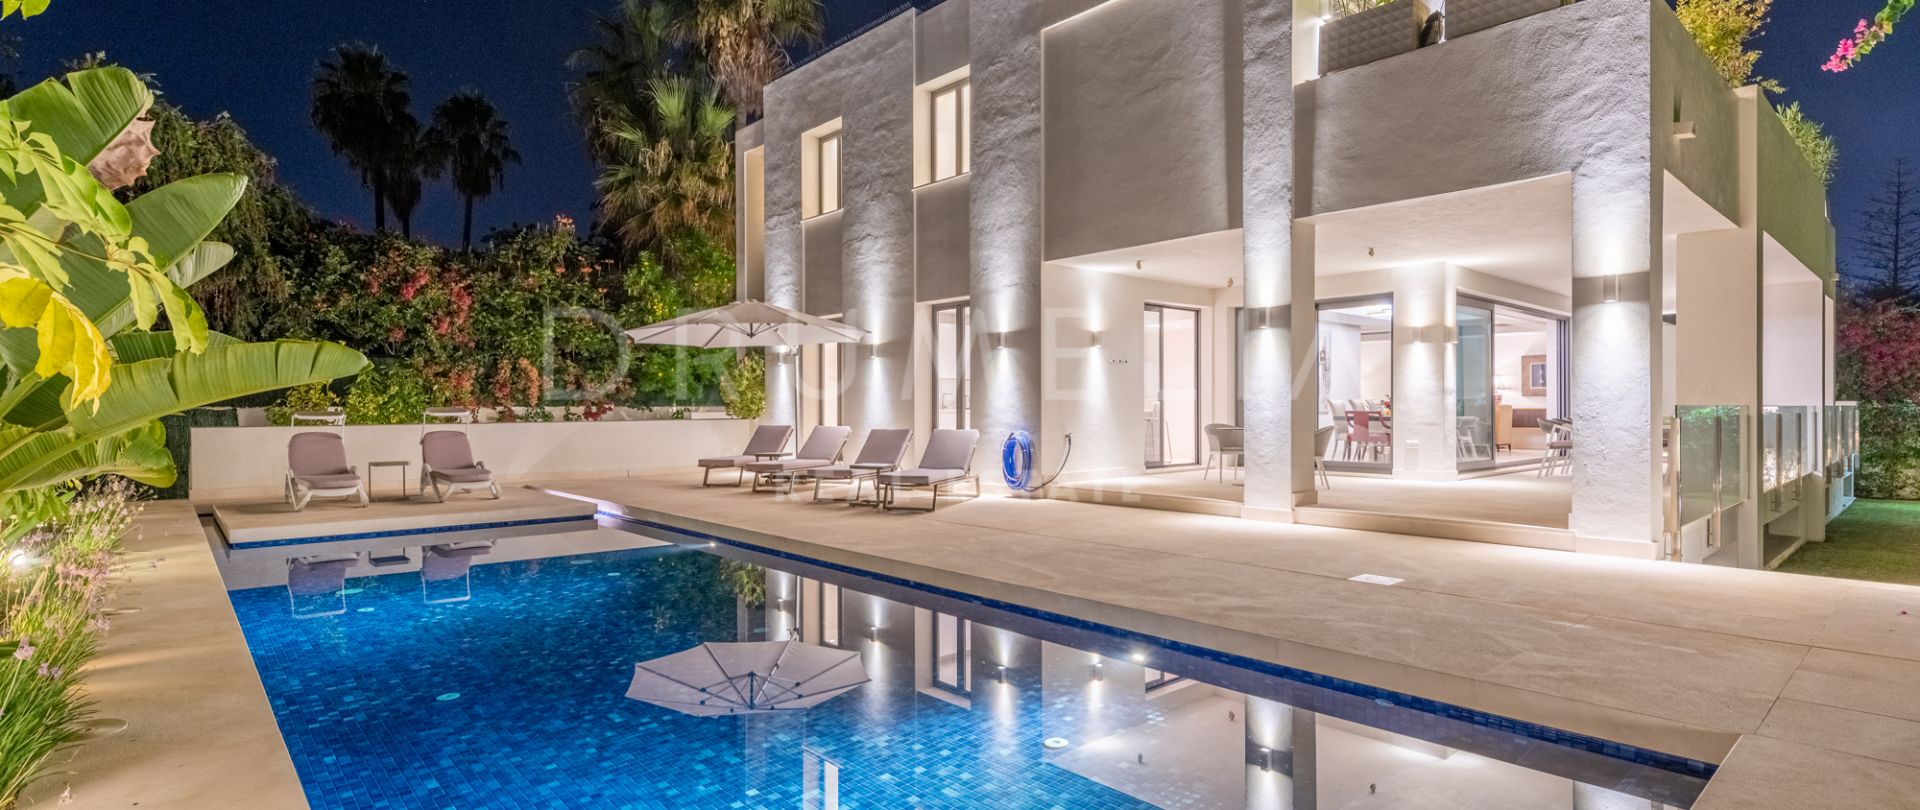 Neue moderne Luxus-Villa am Strand im schönen Cortijo Blanco, San Pedro